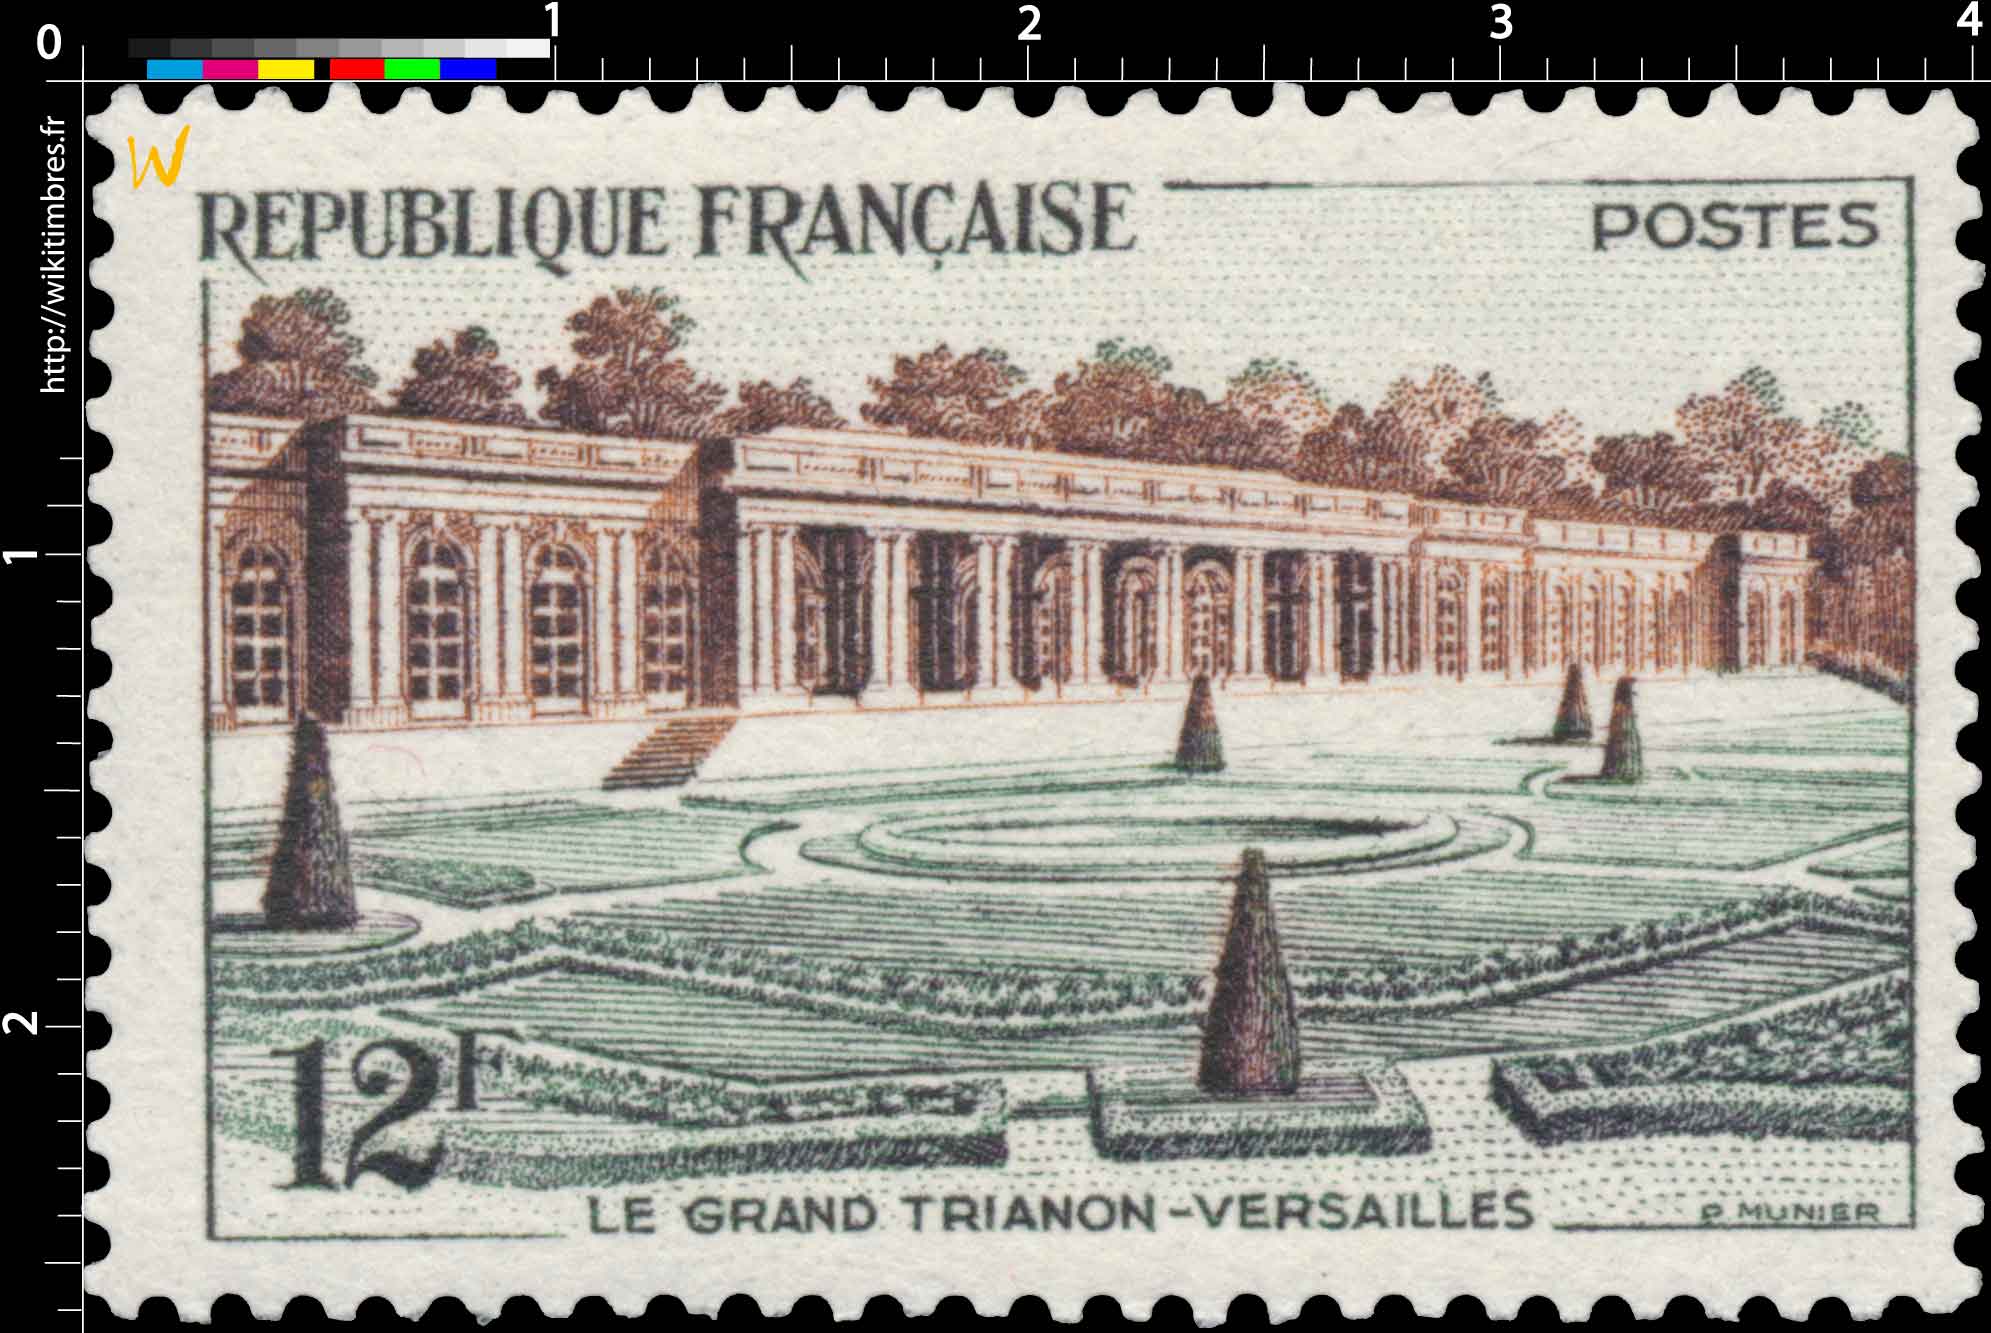 LE GRAND TRIANON-VERSAILLES